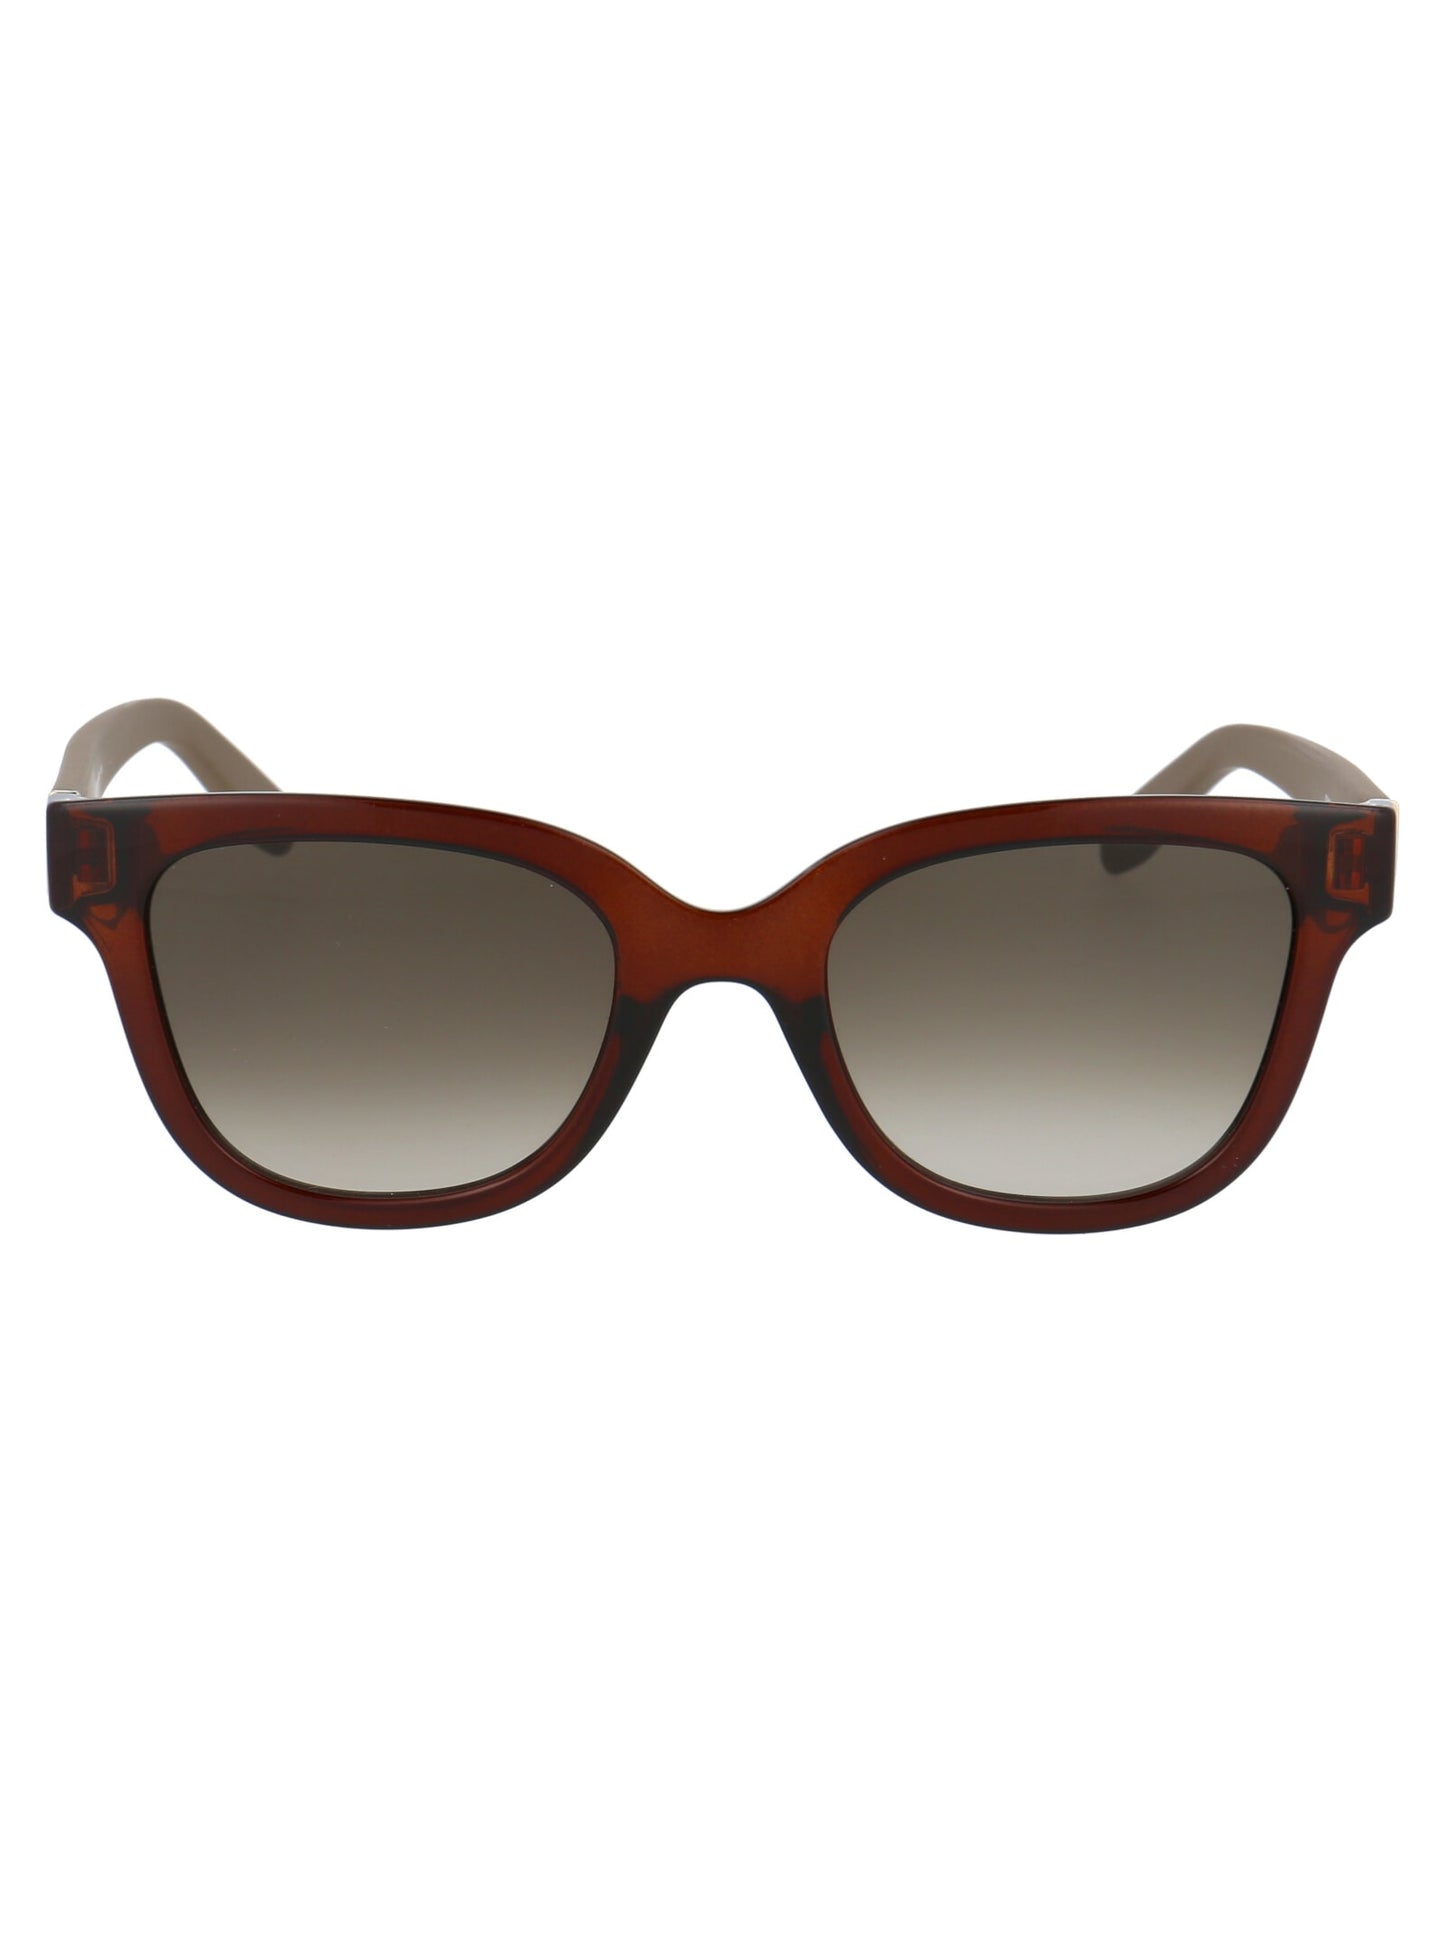 Salvatore Ferragamo SF927S-208-5221 52mm New Sunglasses